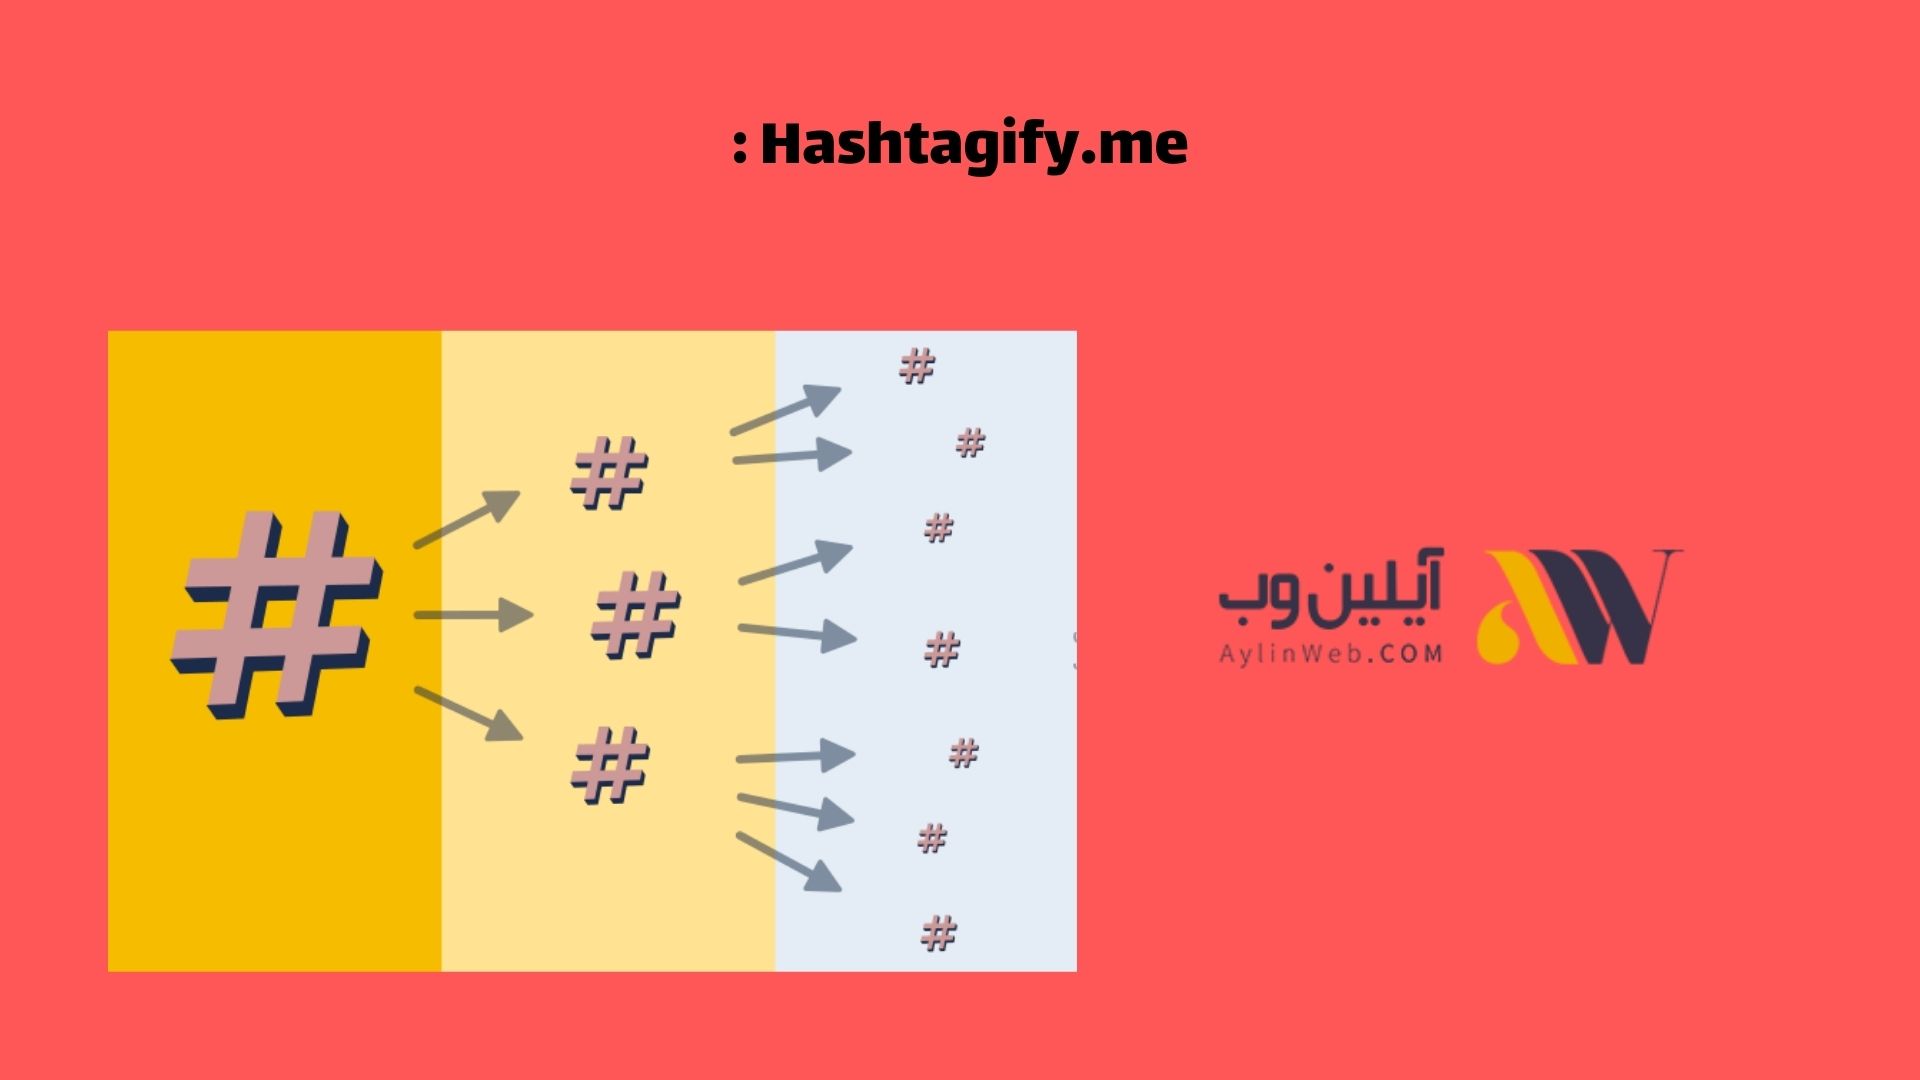 Hashtagify.me: